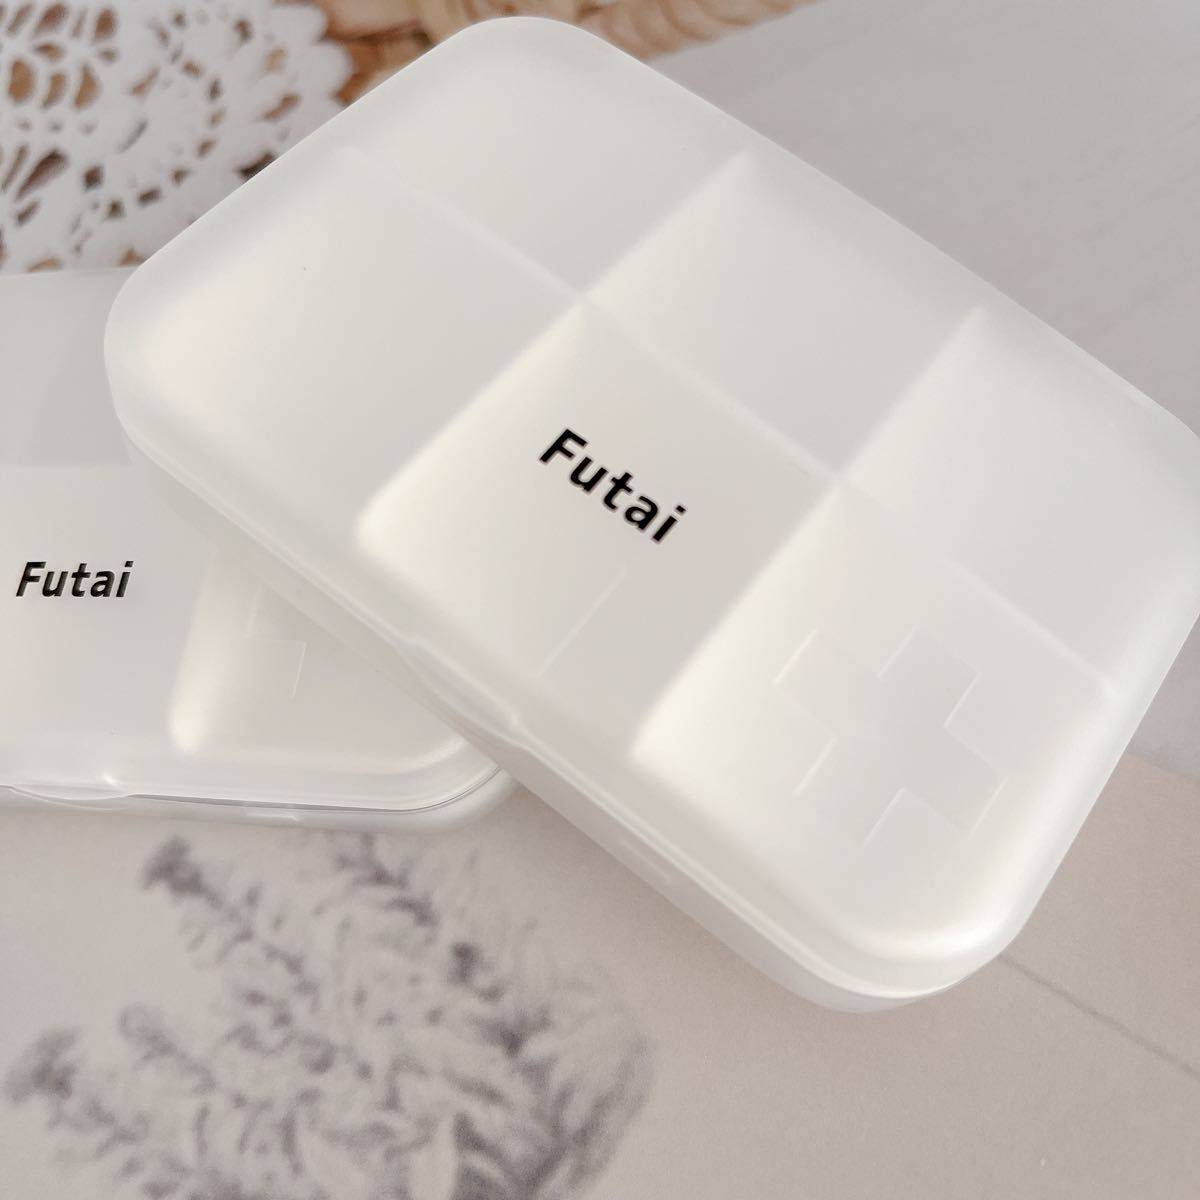 Futai(フタイ) ピルケース 携帯用  薬ケース 薬入れ 2個セット 小物入れ 小物収納ケース パーツケース クリアケース